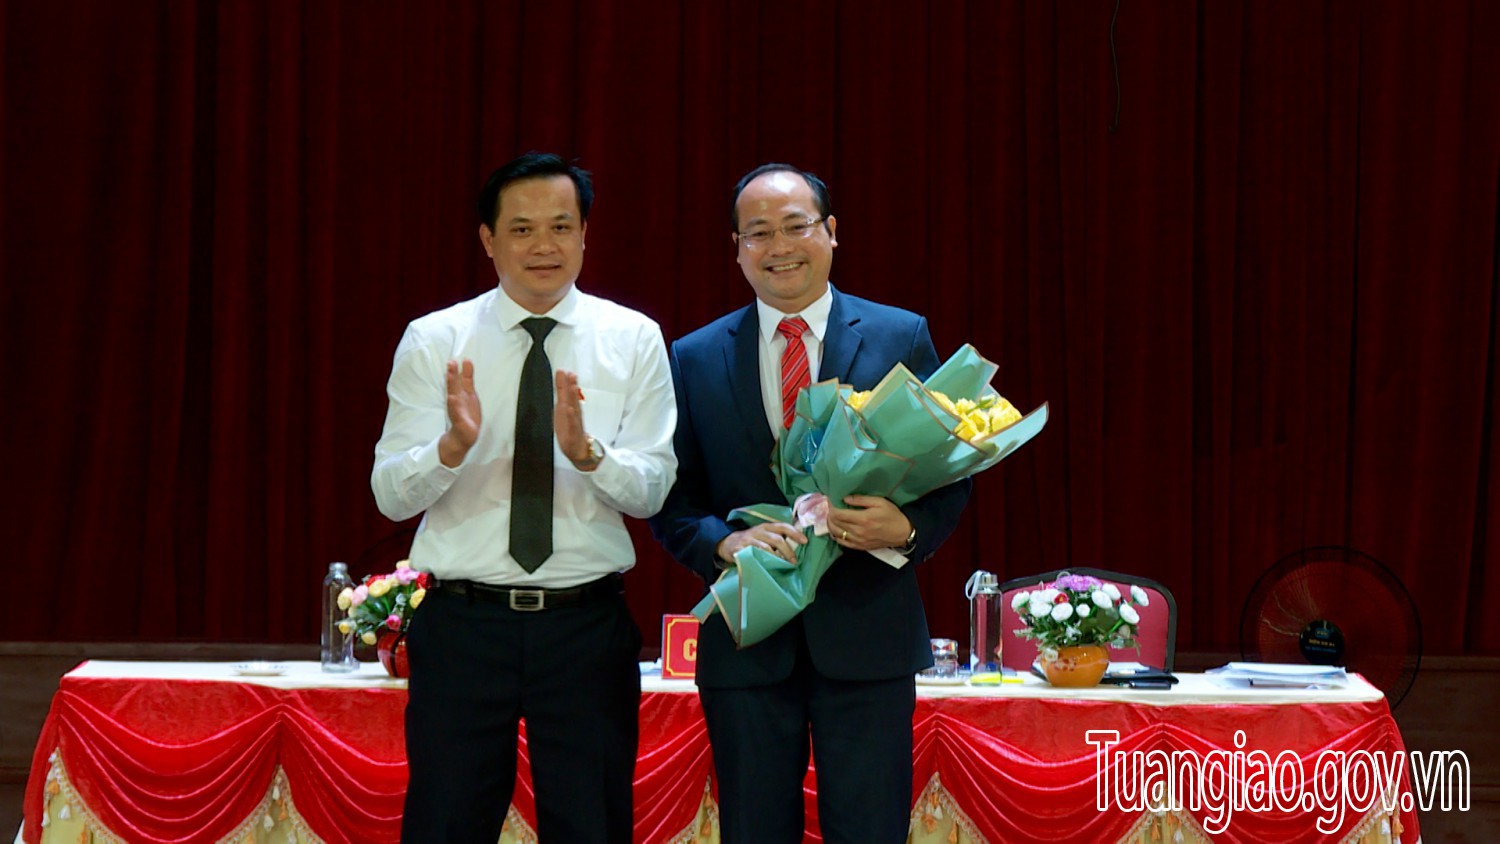 Ông Lê Xuân Cảnh được bầu giữ chức vụ Chủ tịch UBND huyện Tuần Giáo, nhiệm kỳ 2021 - 2026